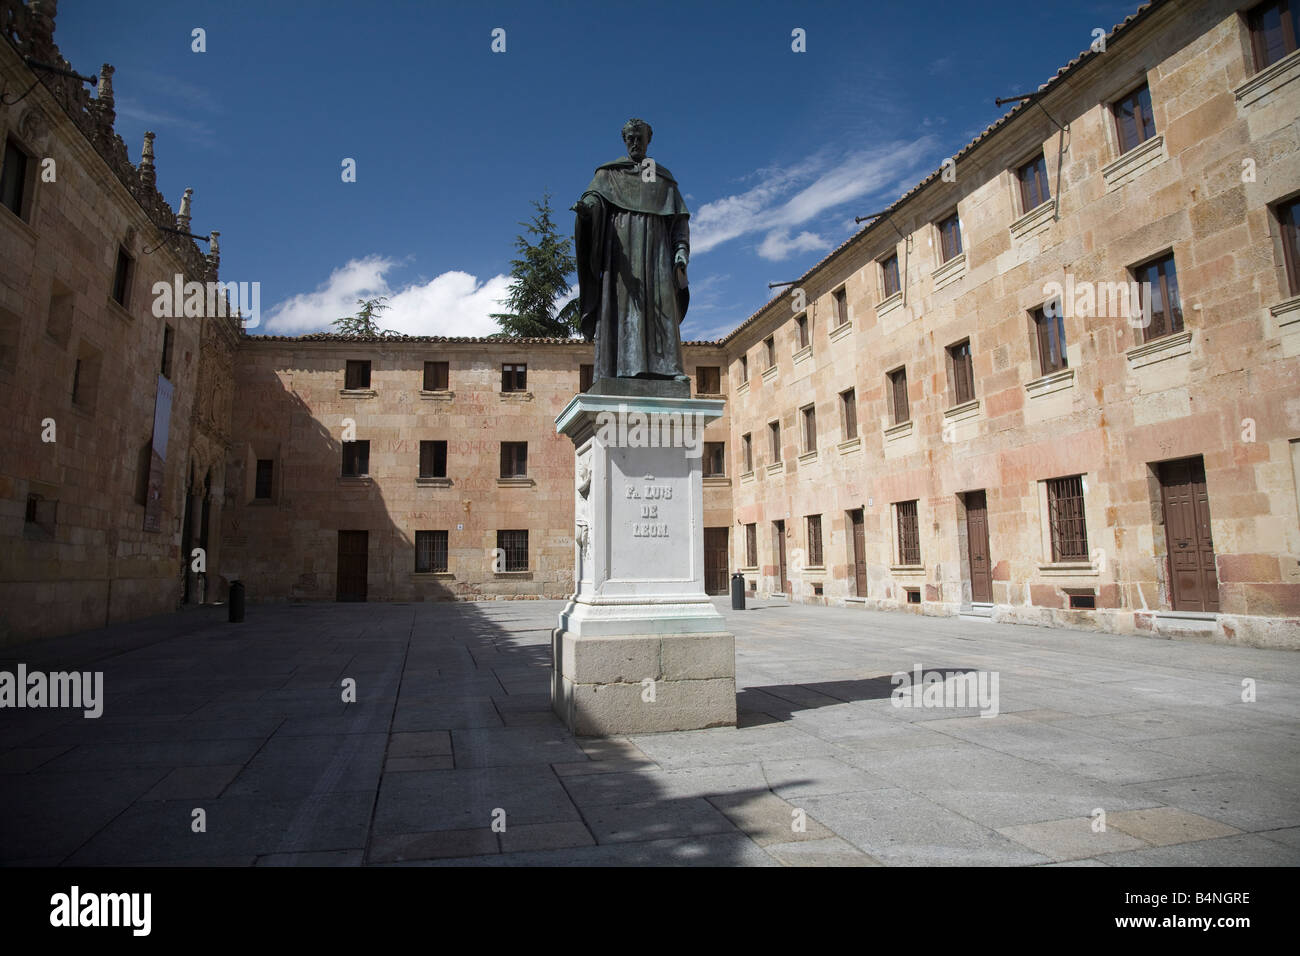 Salamanca - una estatua de Fray Luis de León (poeta) Foto de stock